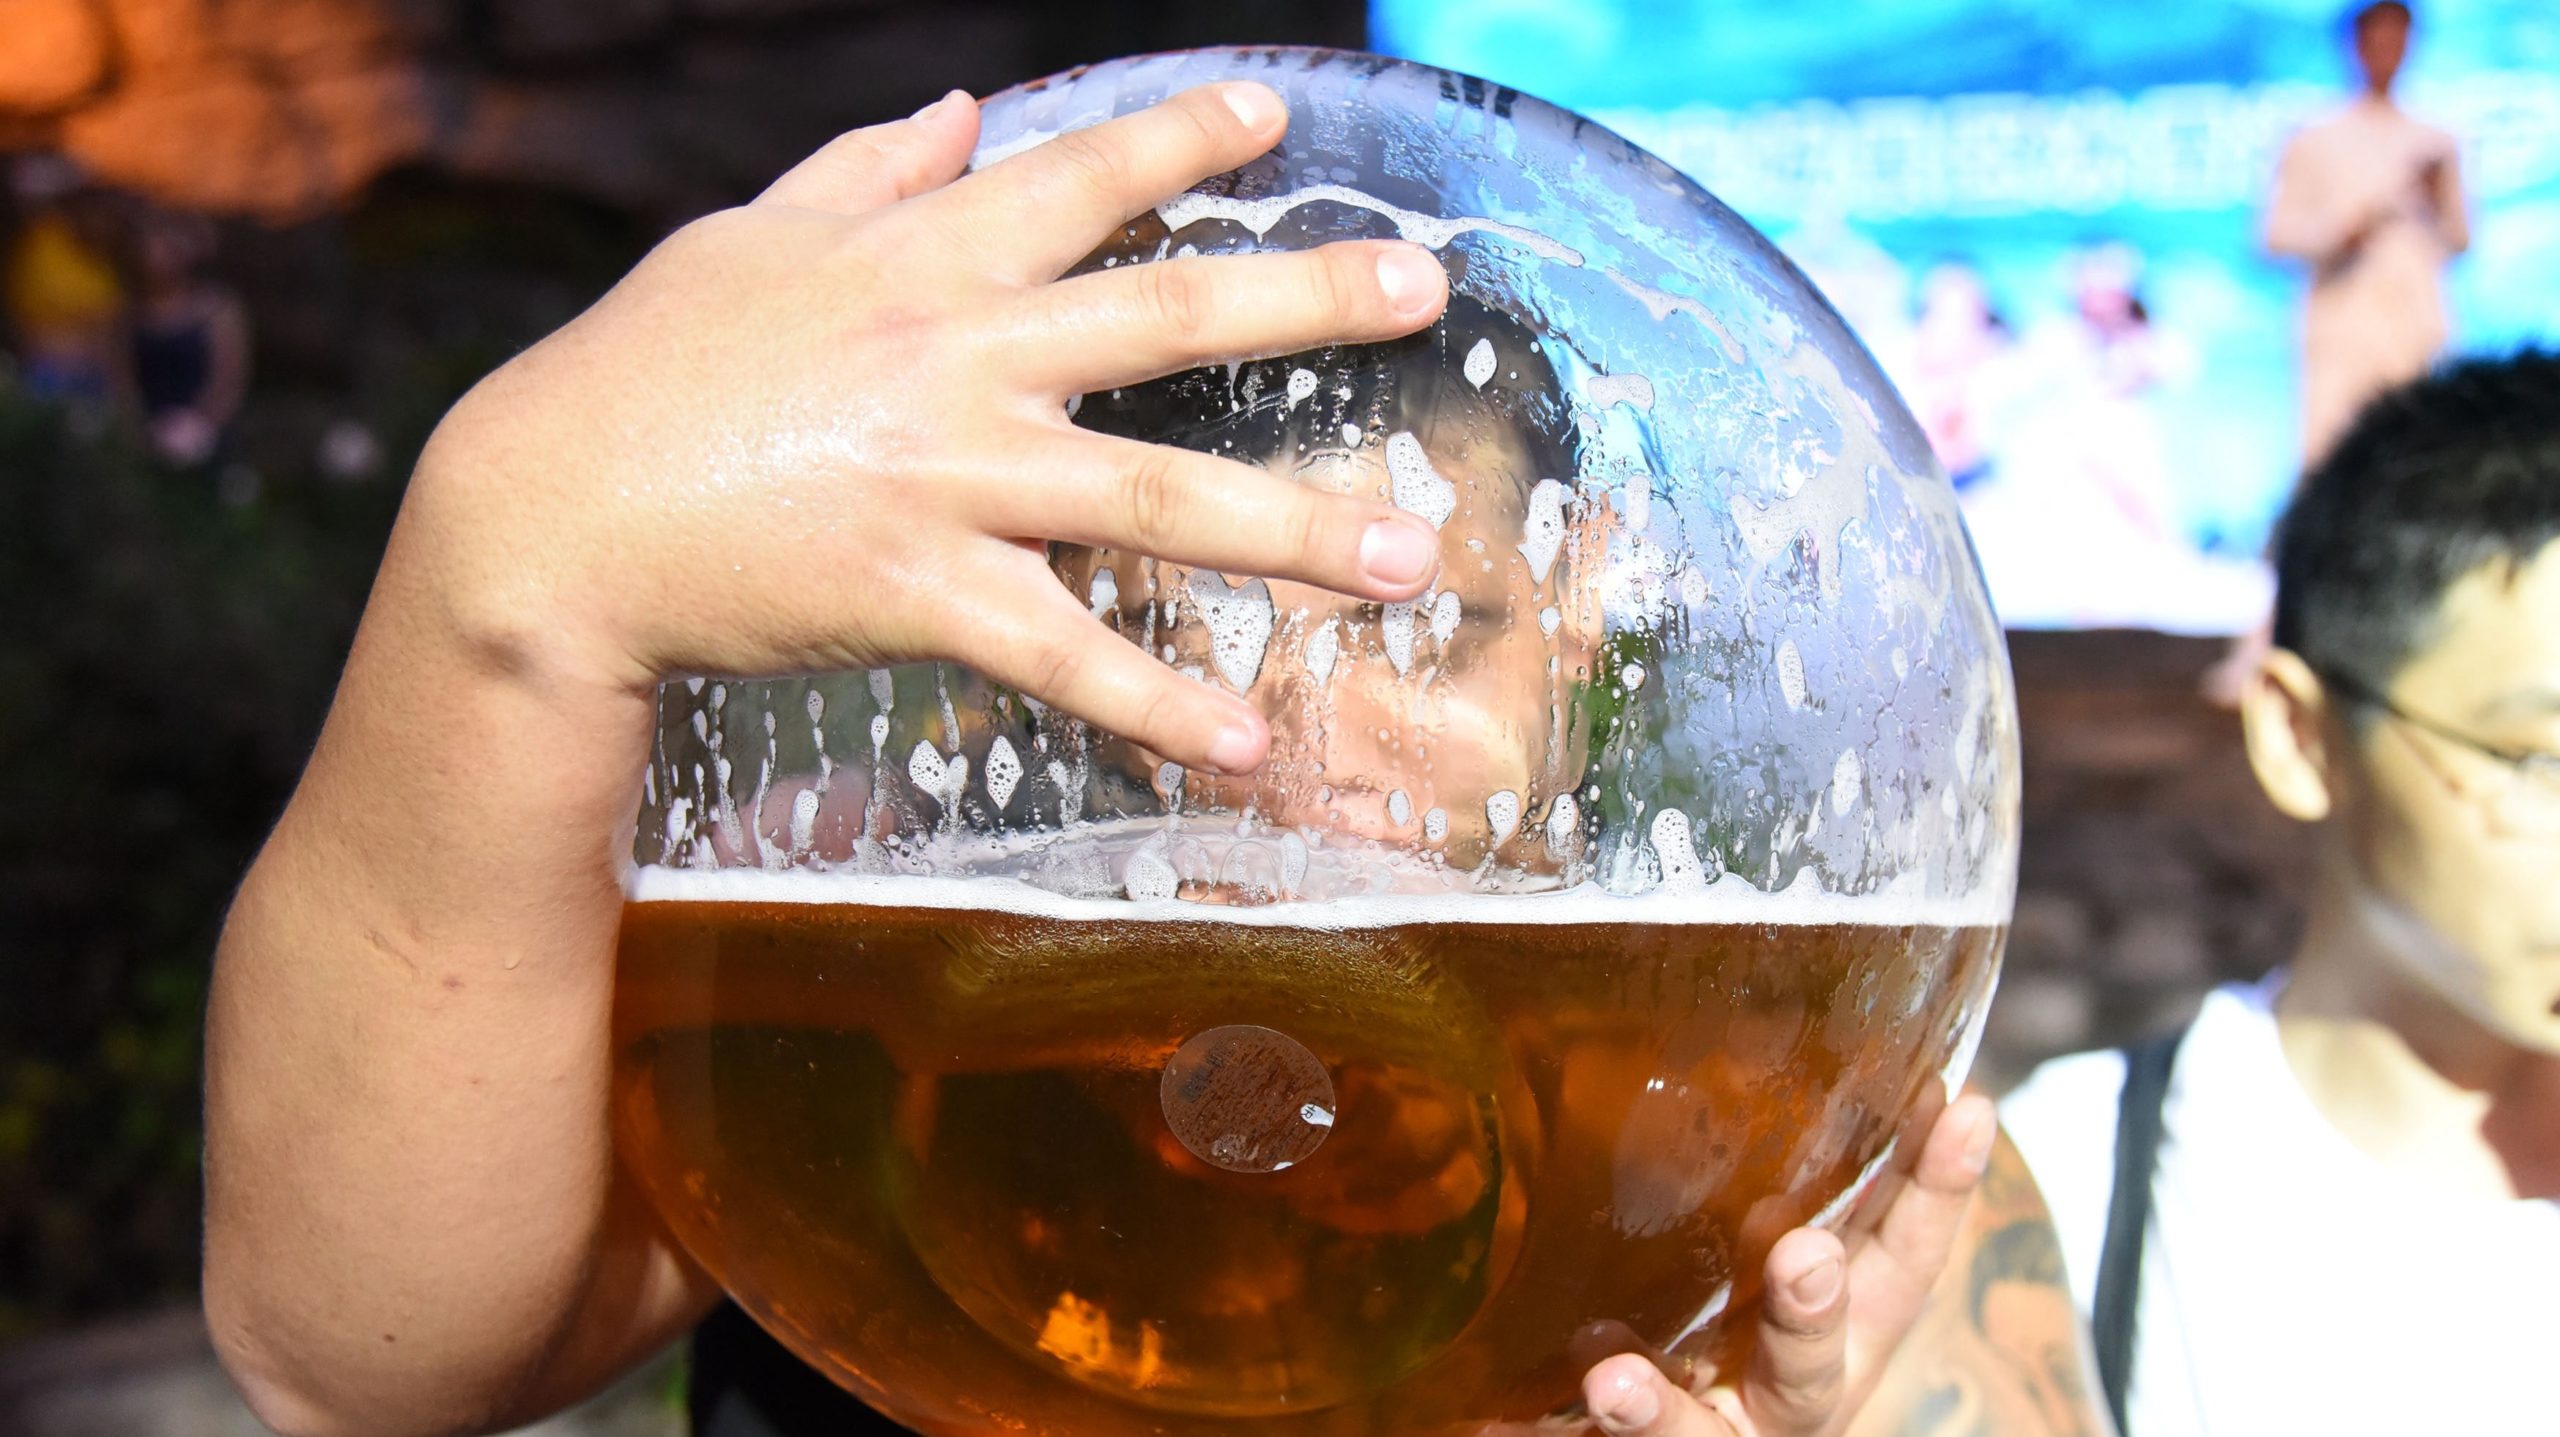 Homem bebendo cerveja em um copo gigante. Crédito: VCG/Getty Images